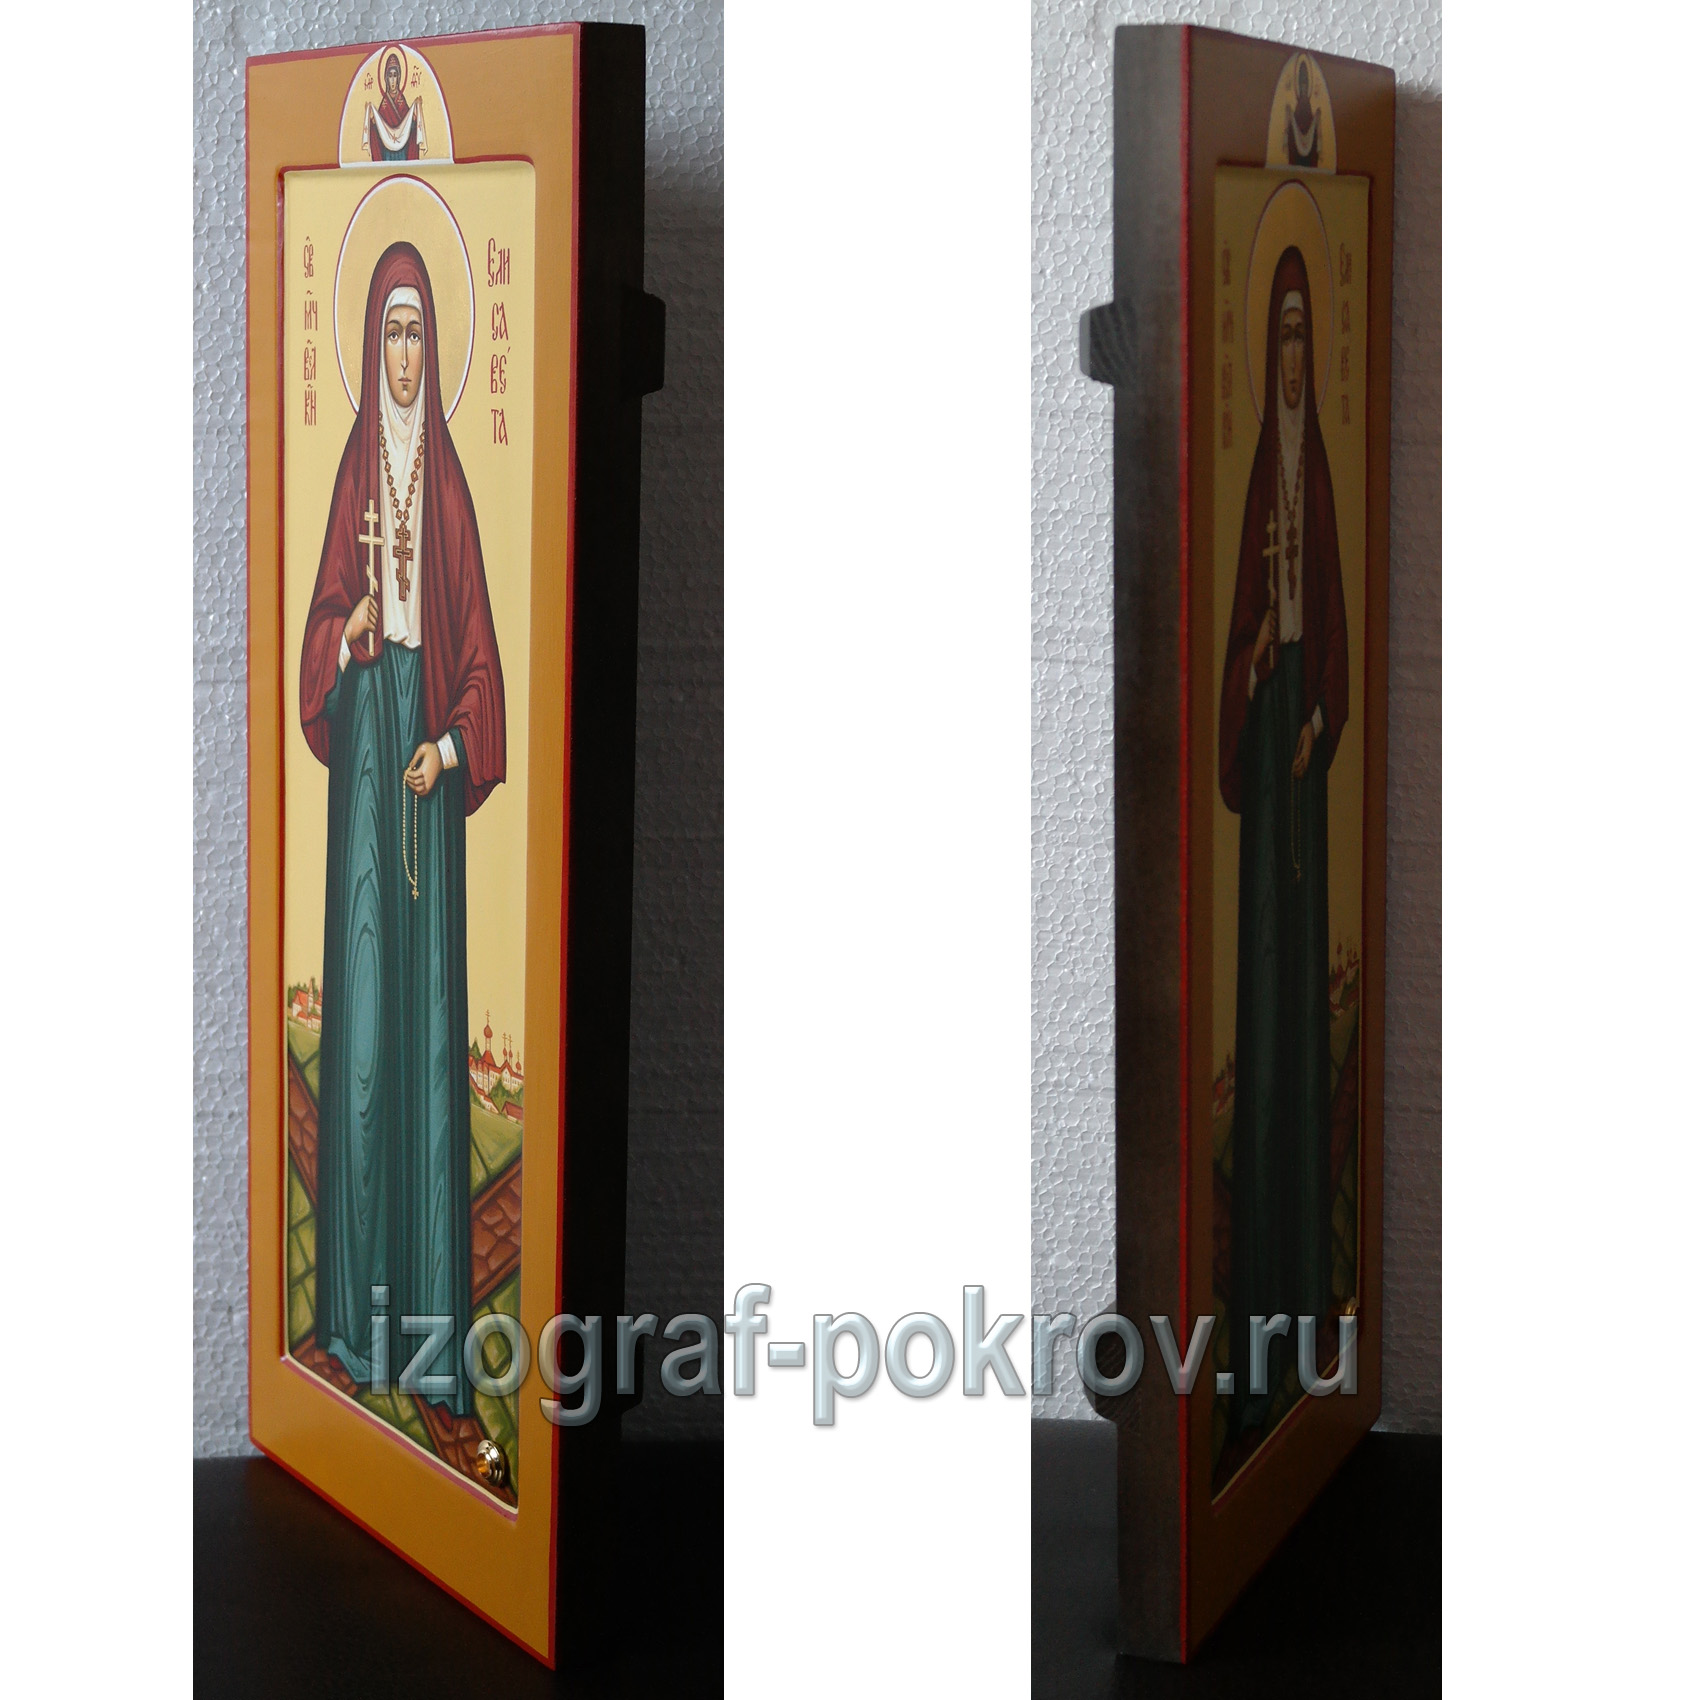 Мерная икона Елисавета Федоровна Алапаевская заказать икону